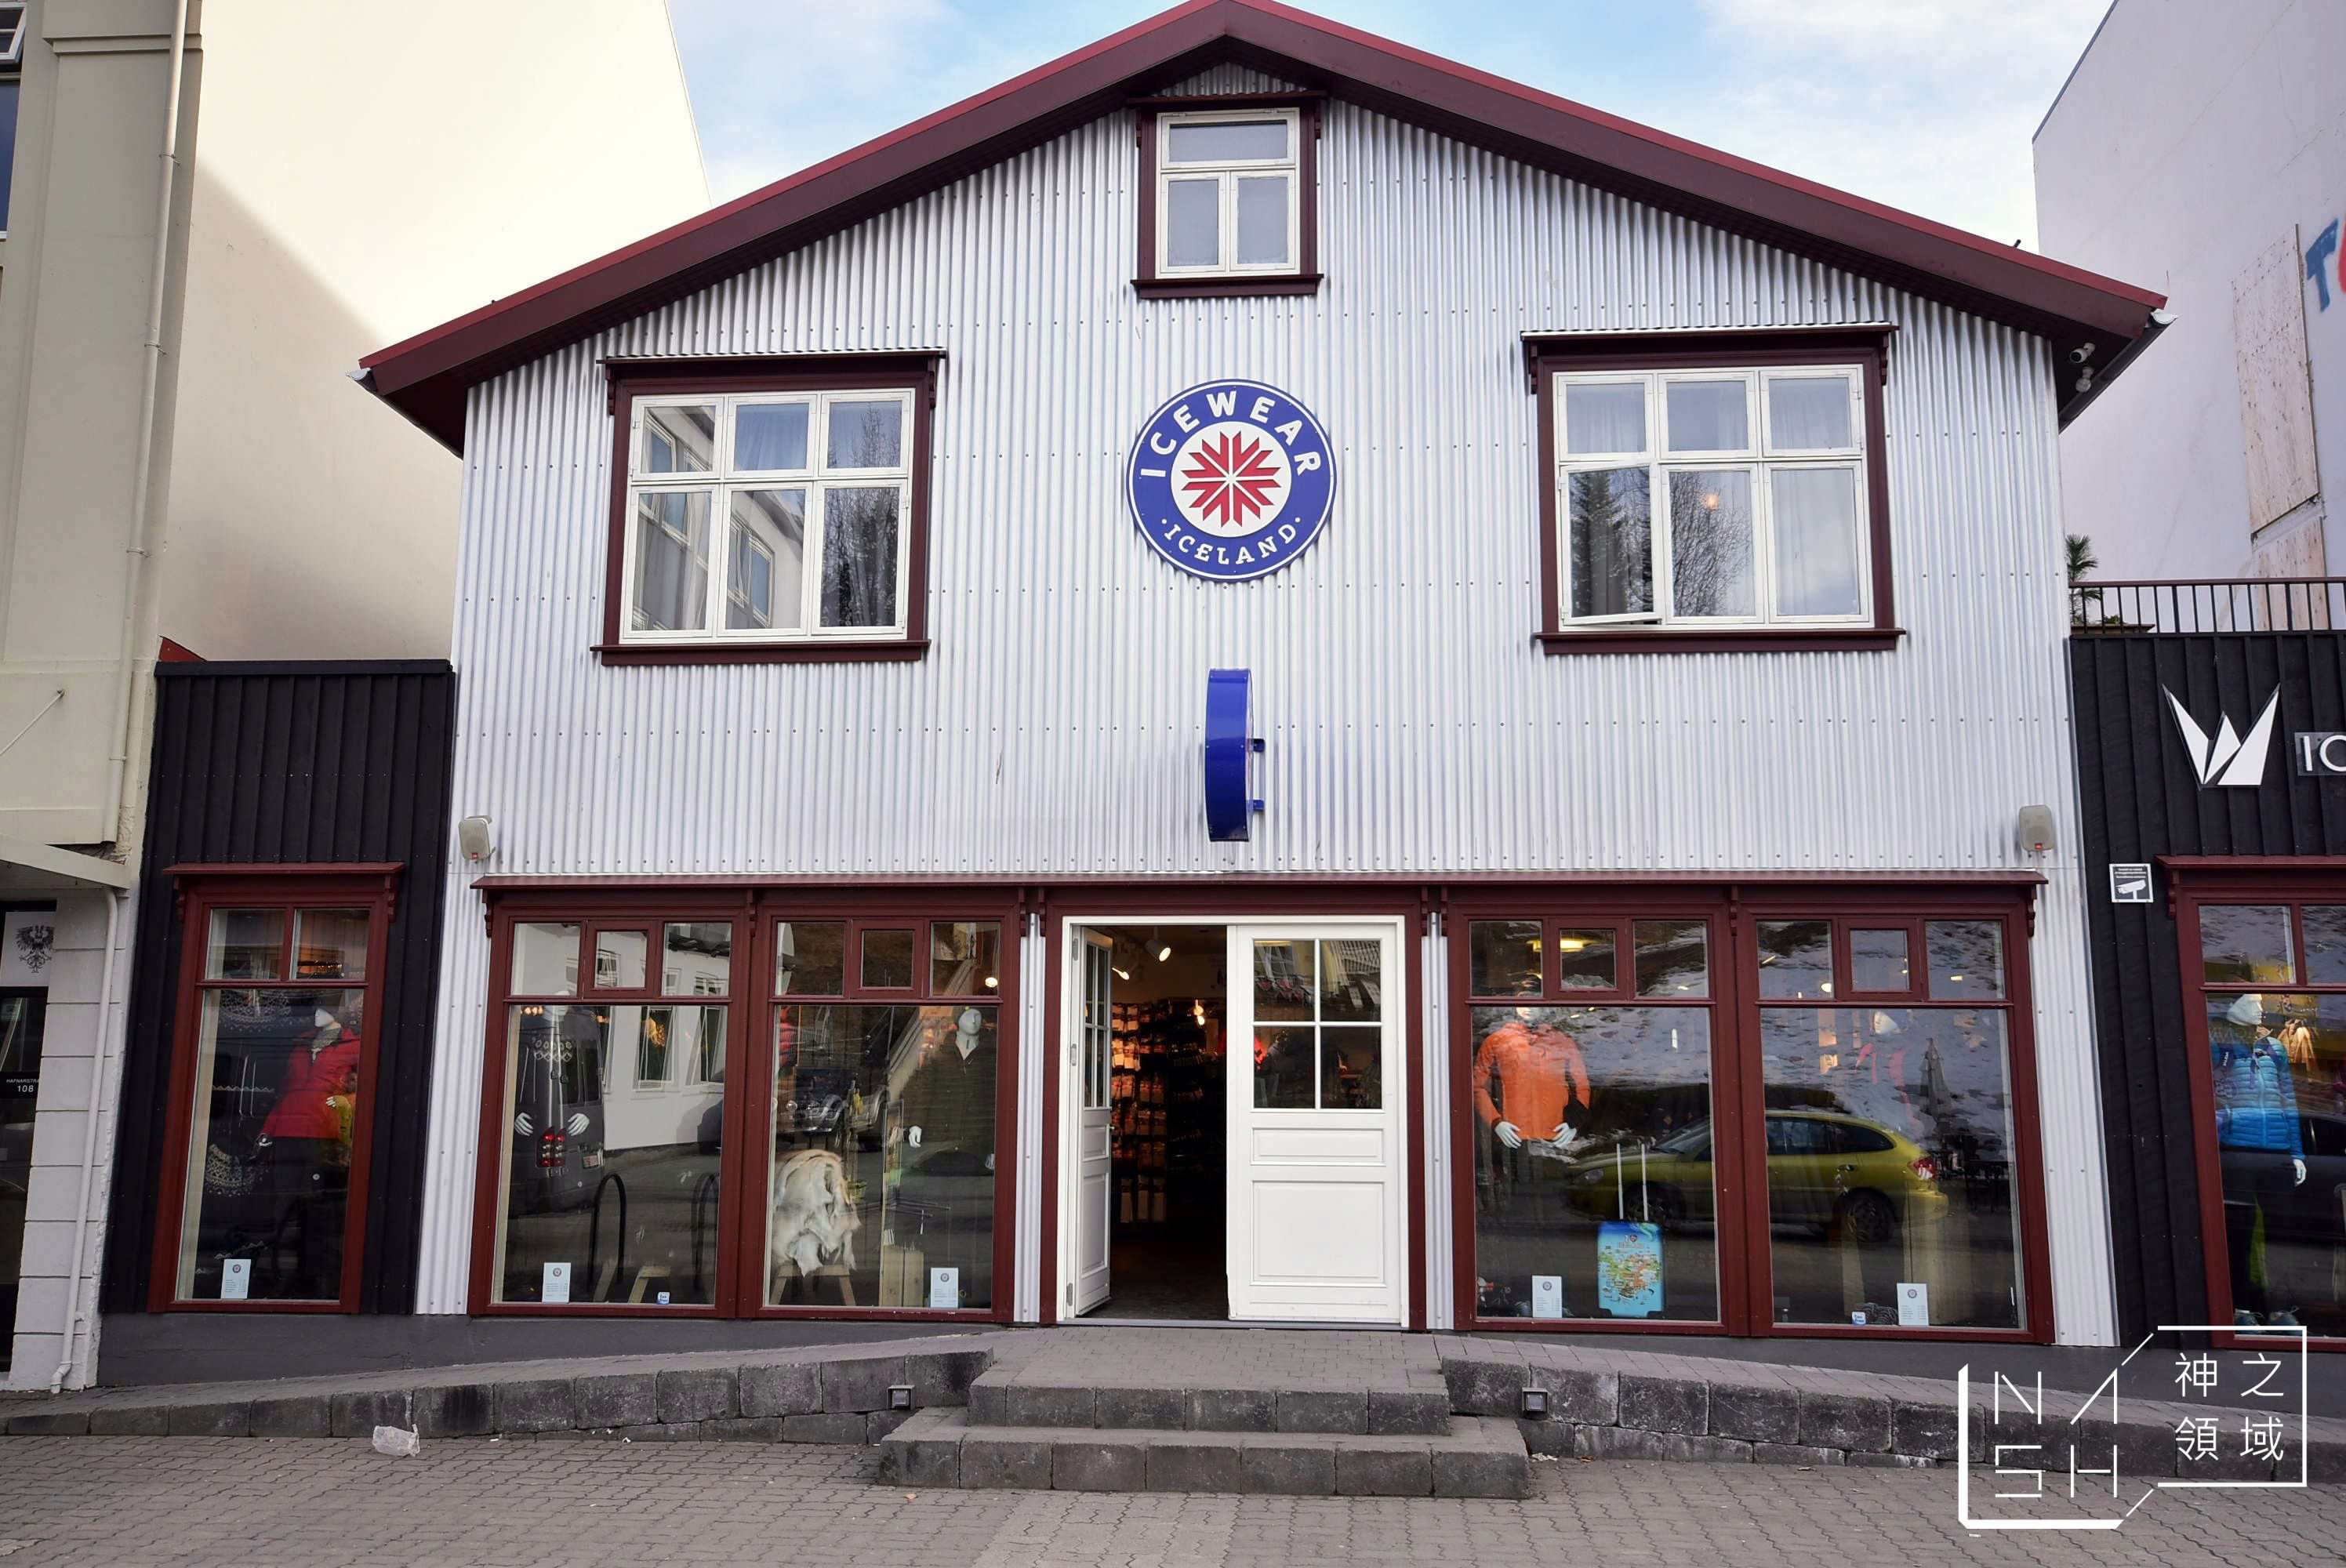 Akureyri,阿克雷里教堂,阿克雷里紅綠燈,冰島自由行環島景點推薦,阿克雷里